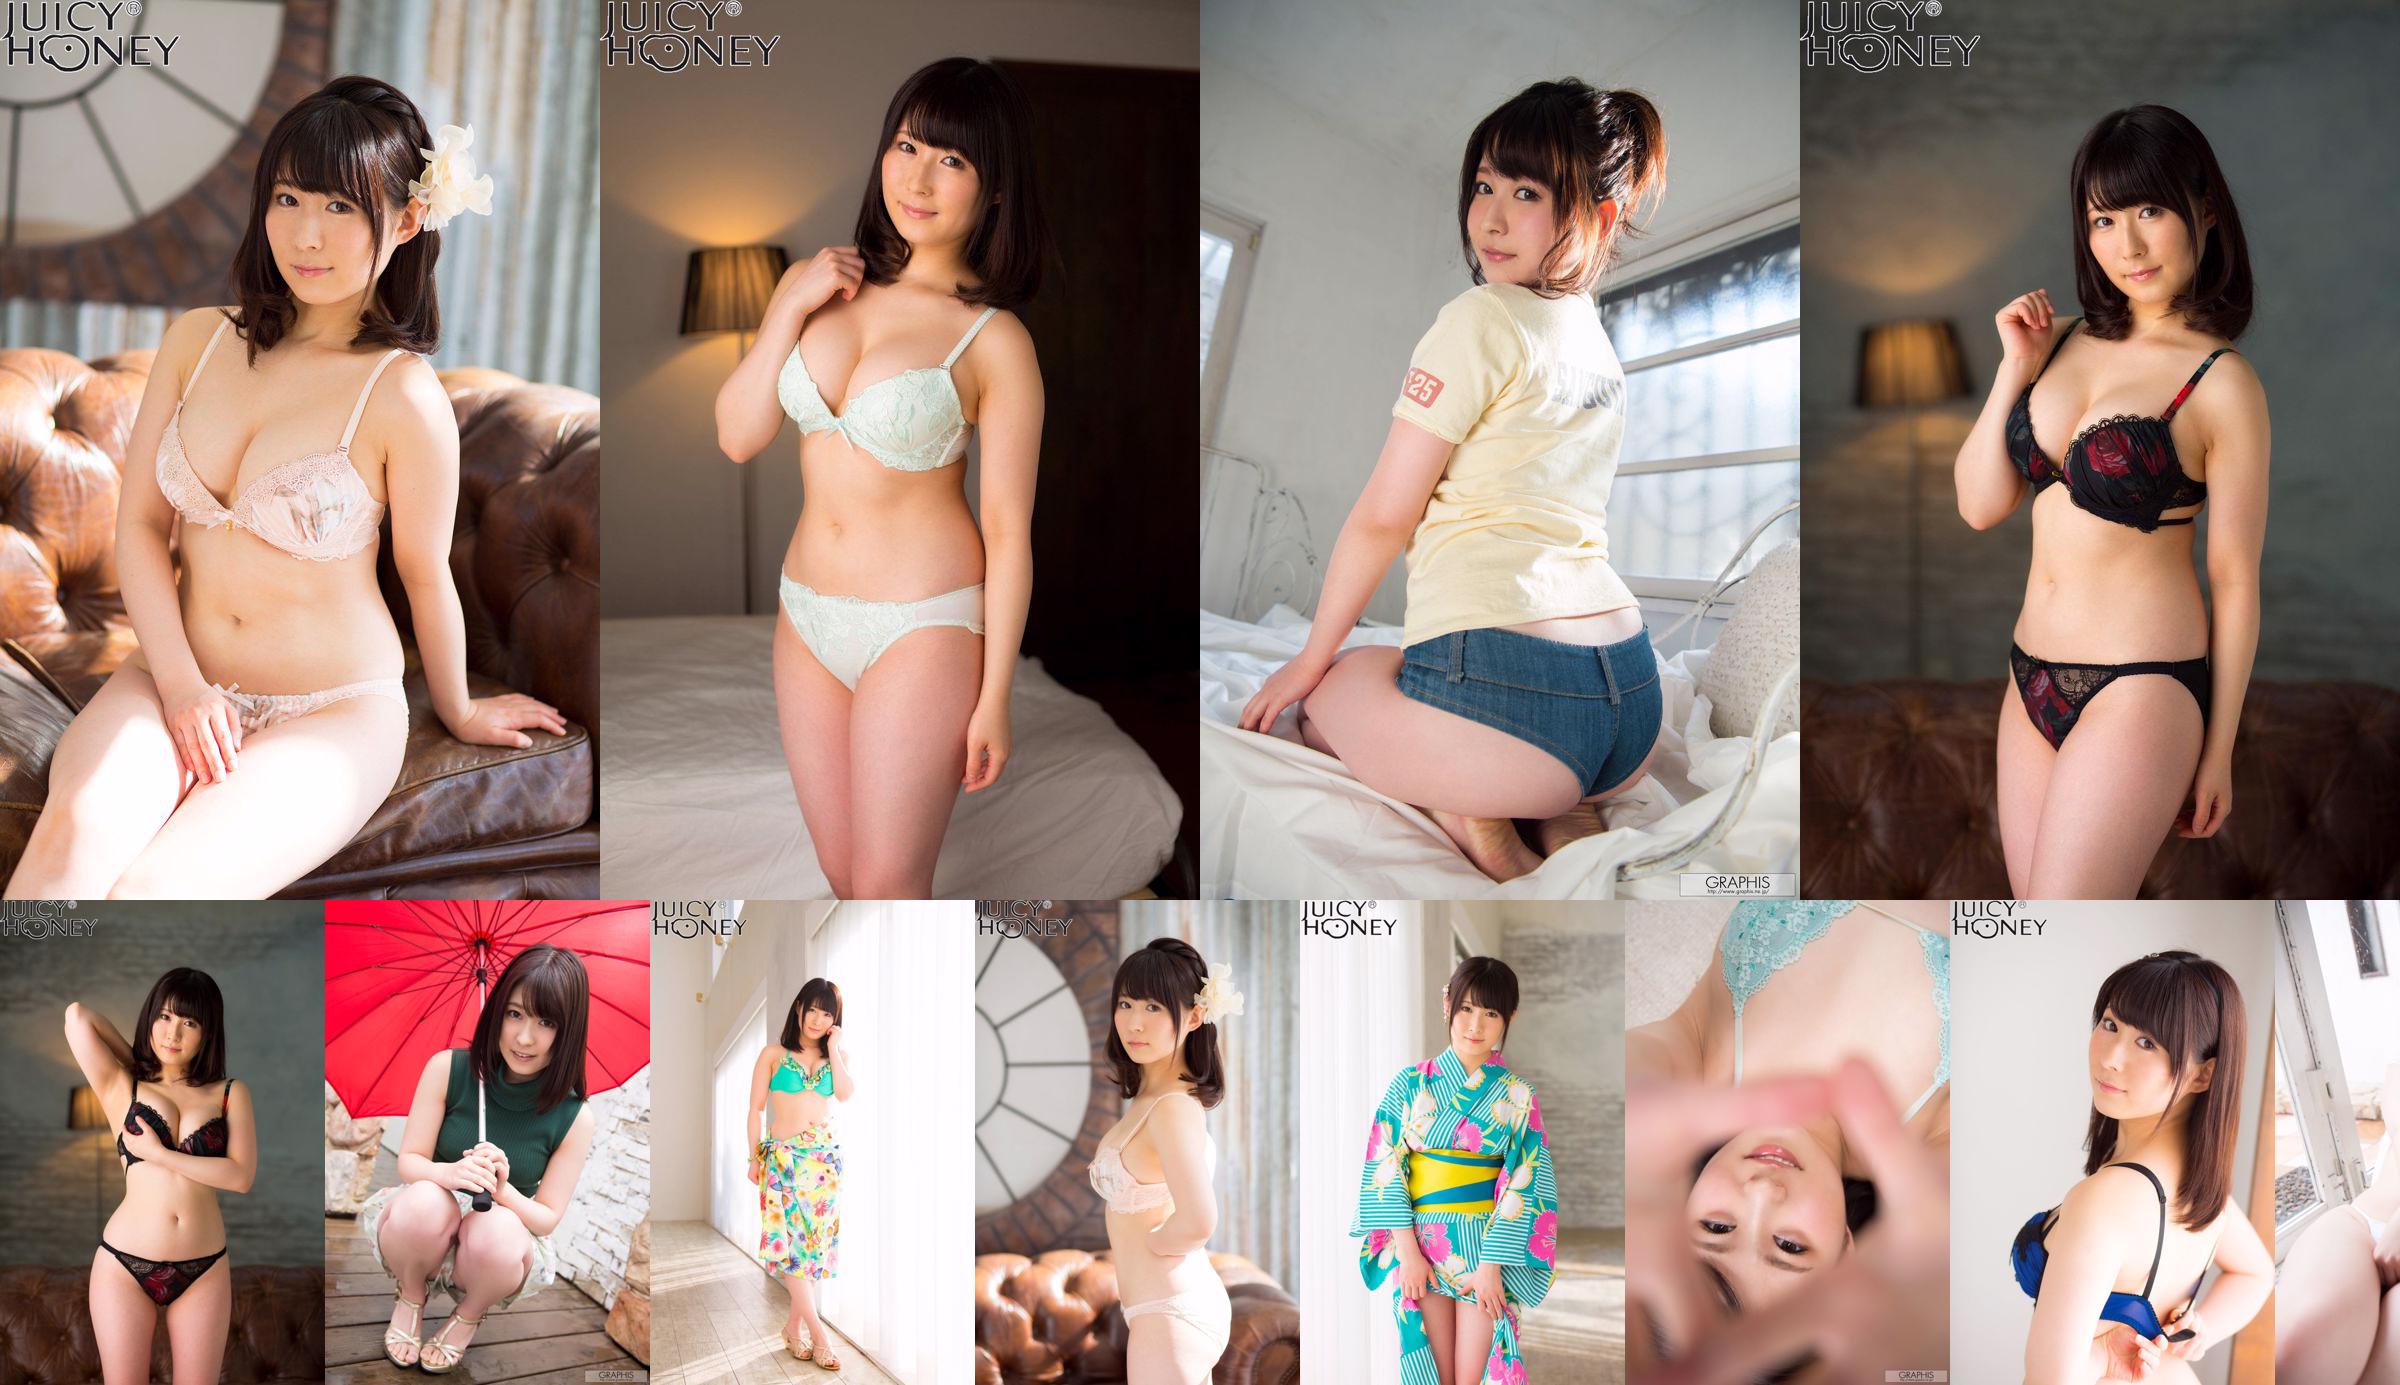 [X-City] Juicy Honey jh216 Asuka り ん Rin Asuka No.429b2d Trang 1